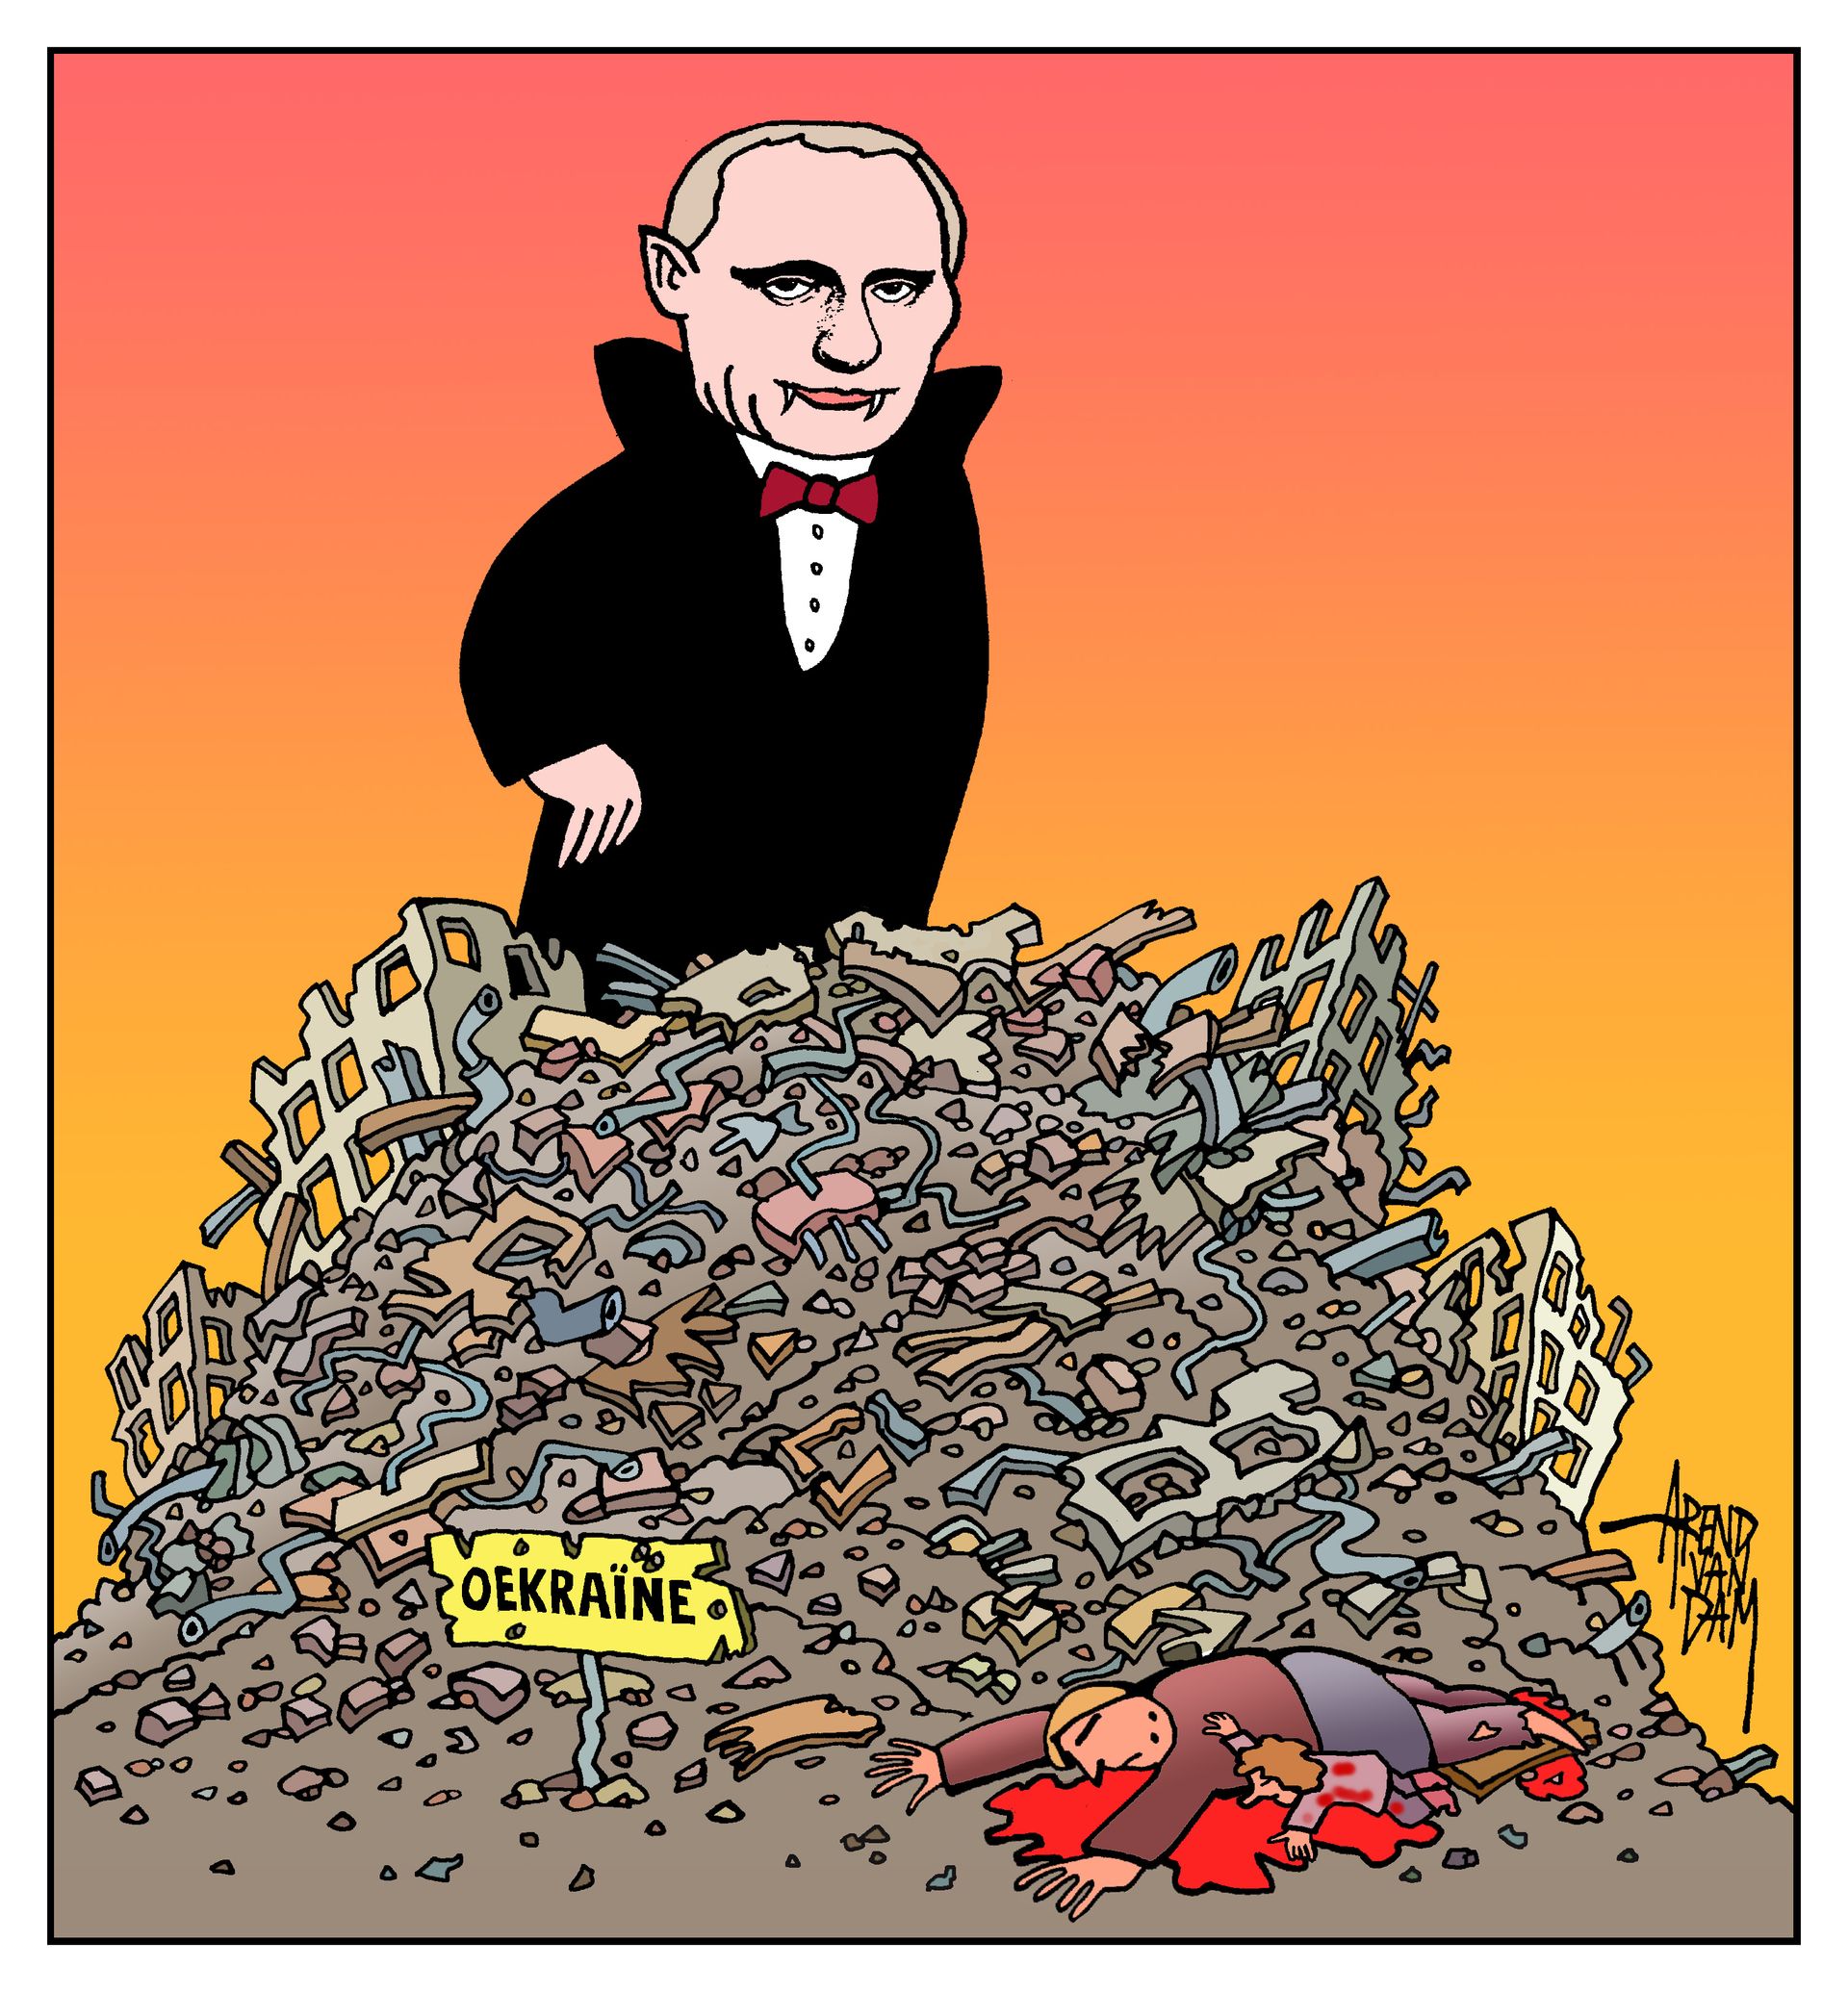 Oekraïne&Poetin(Dracula)